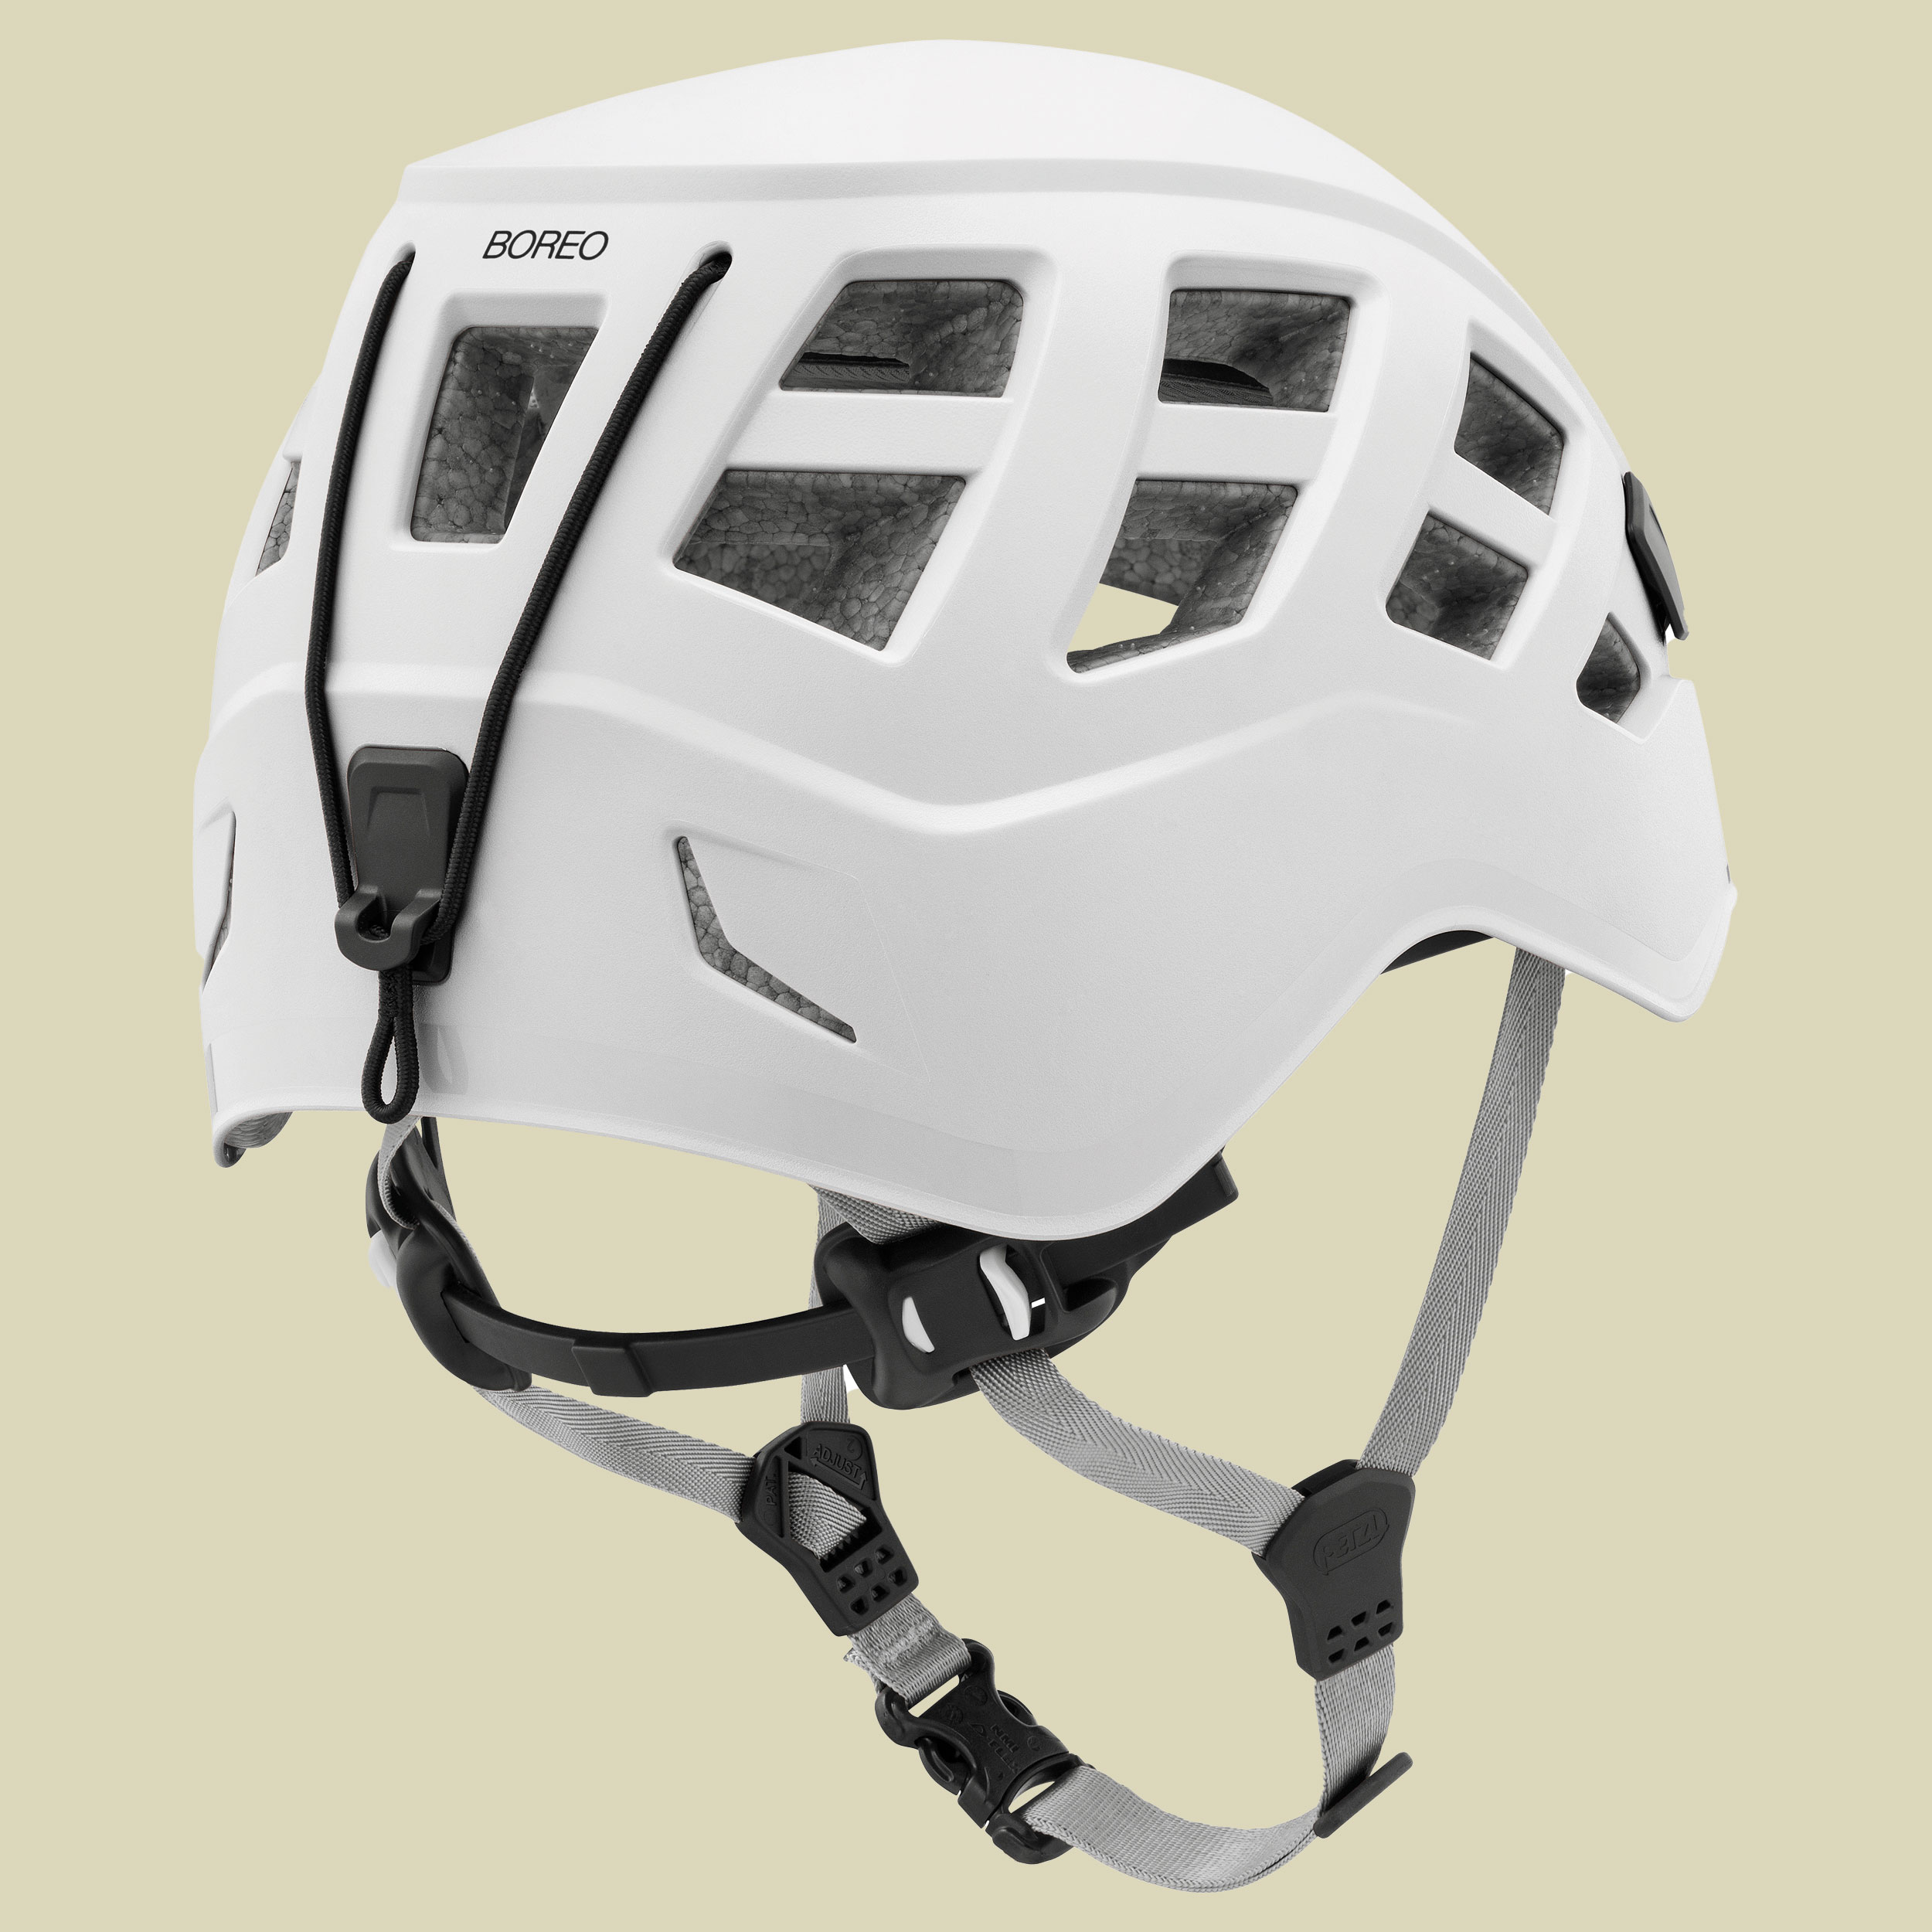 Boreo Helm Größe S/M Farbe weiß